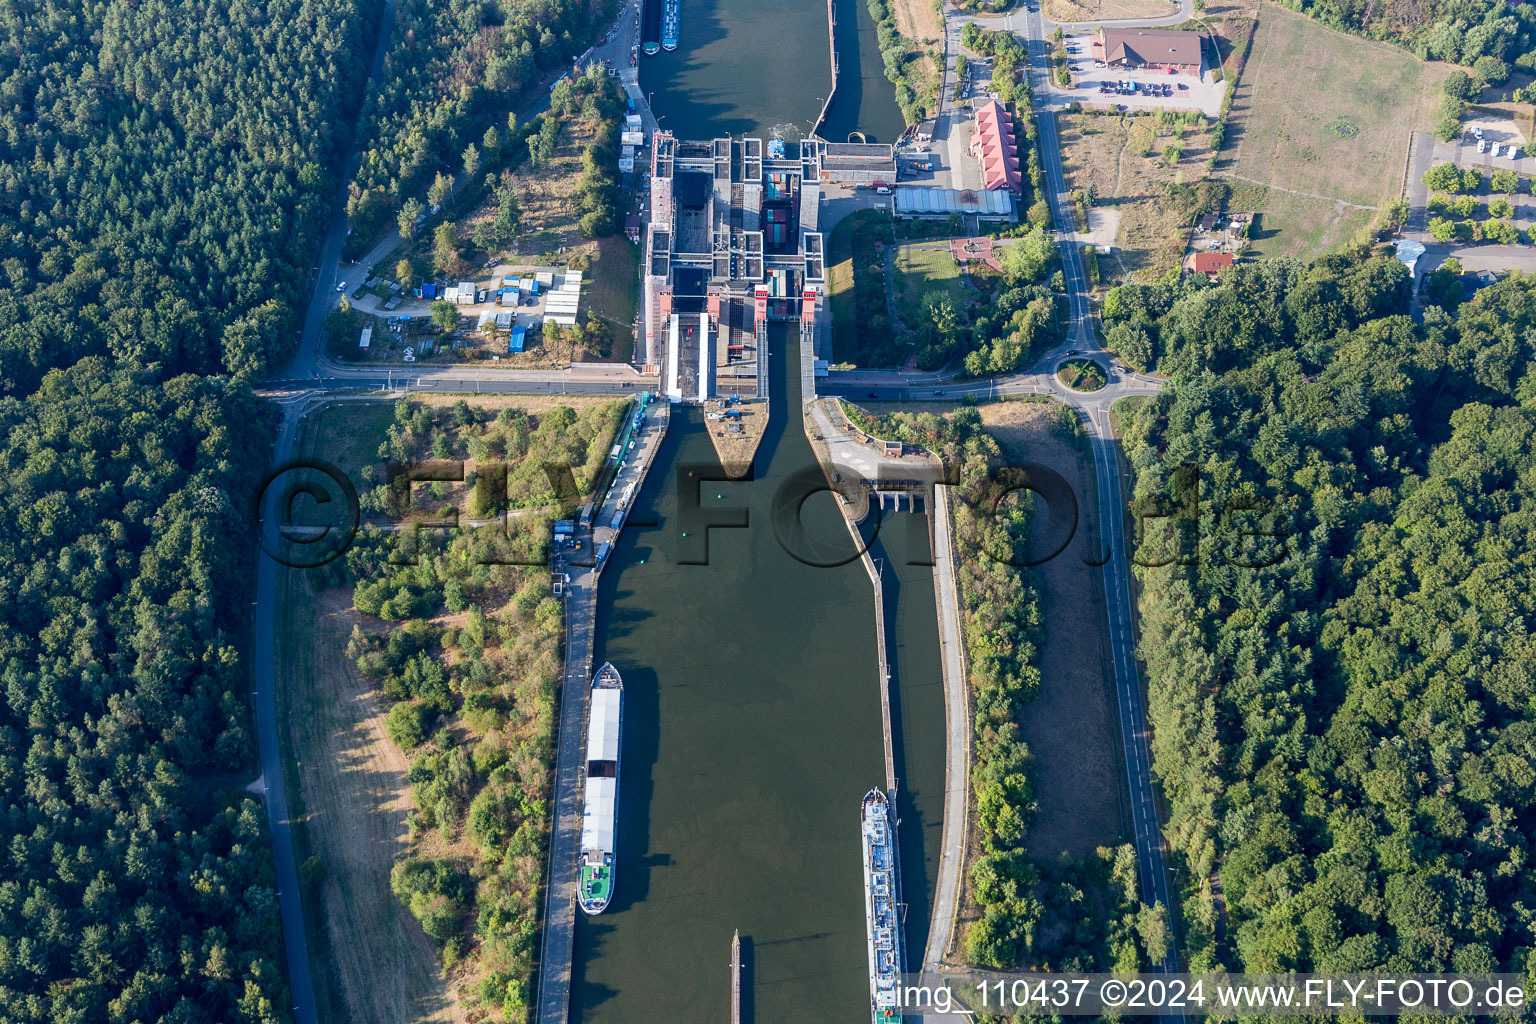 Systèmes d'ascenseurs à bateaux et d'écluses sur les rives du canal latéral à l'Elbe à Scharnebeck dans le département Basse-Saxe, Allemagne vue d'en haut